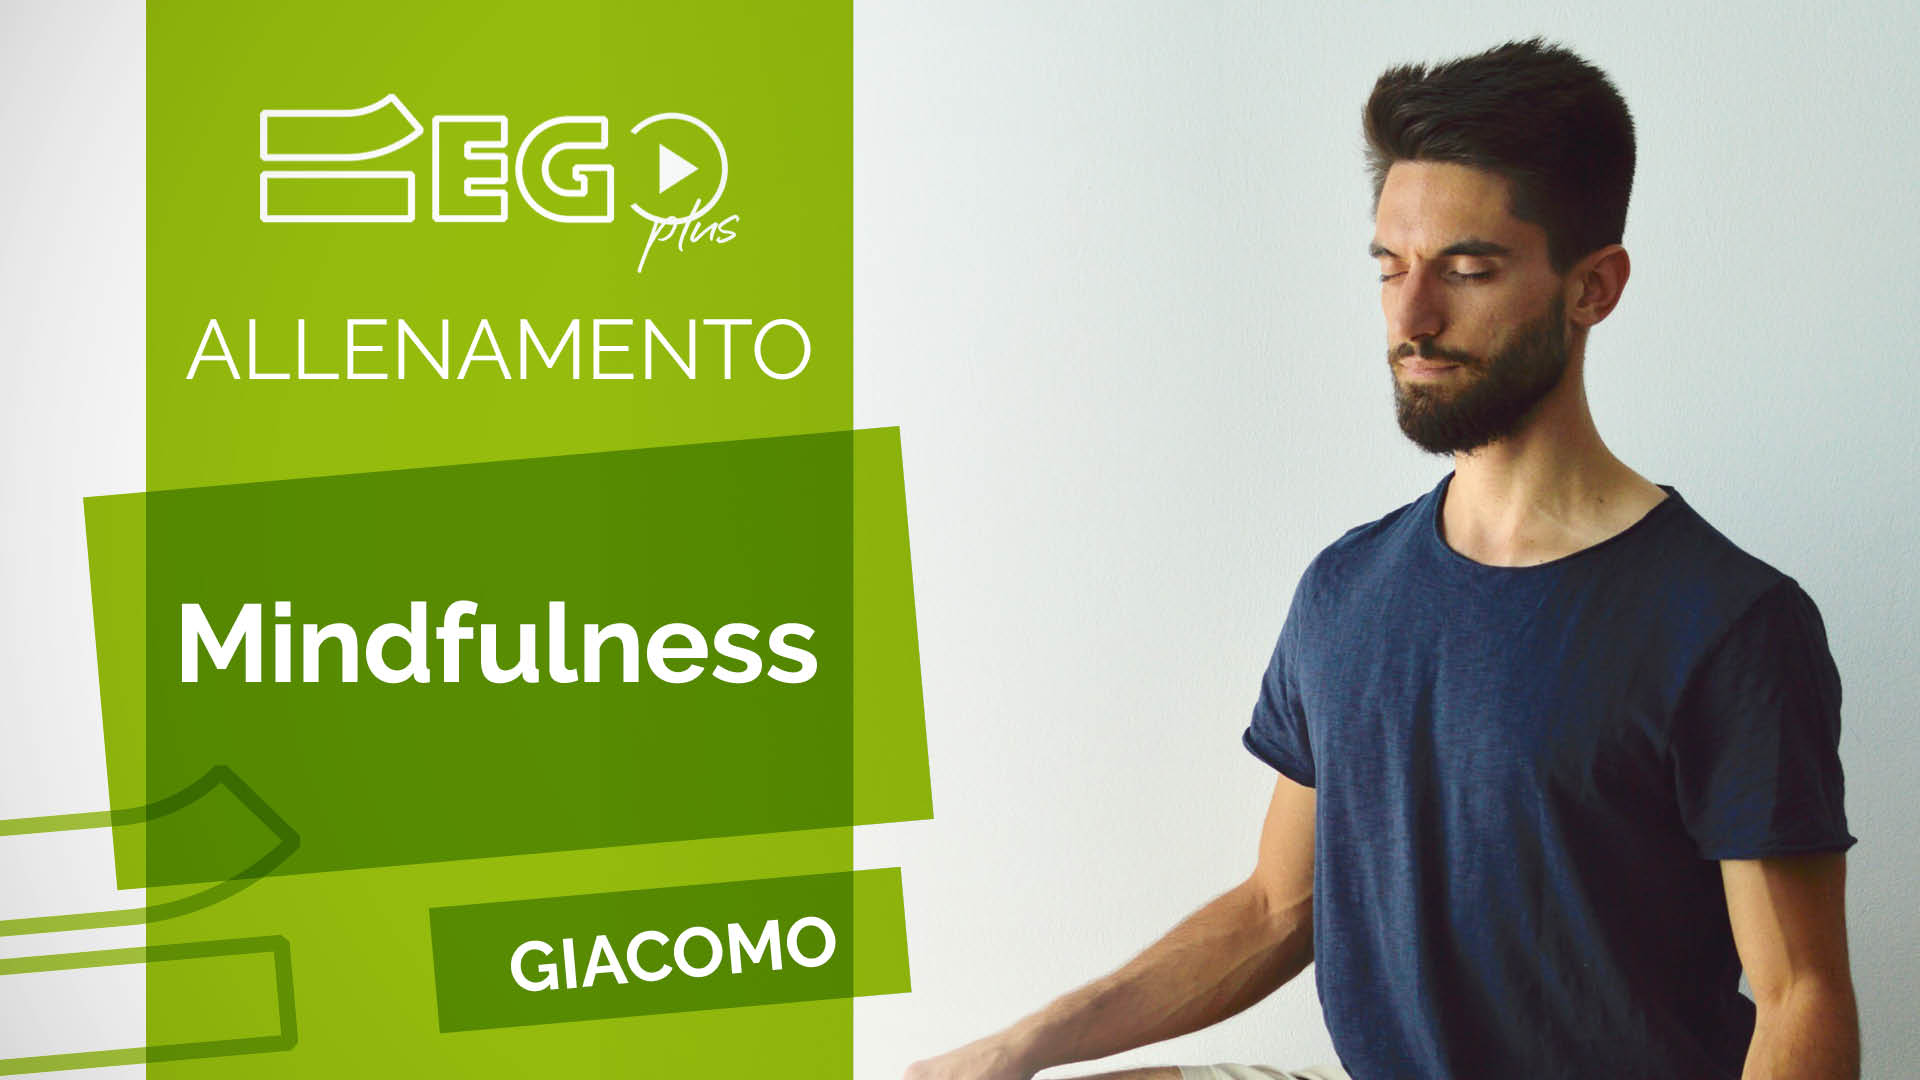 Giacomo-Mindfulness-egoplus